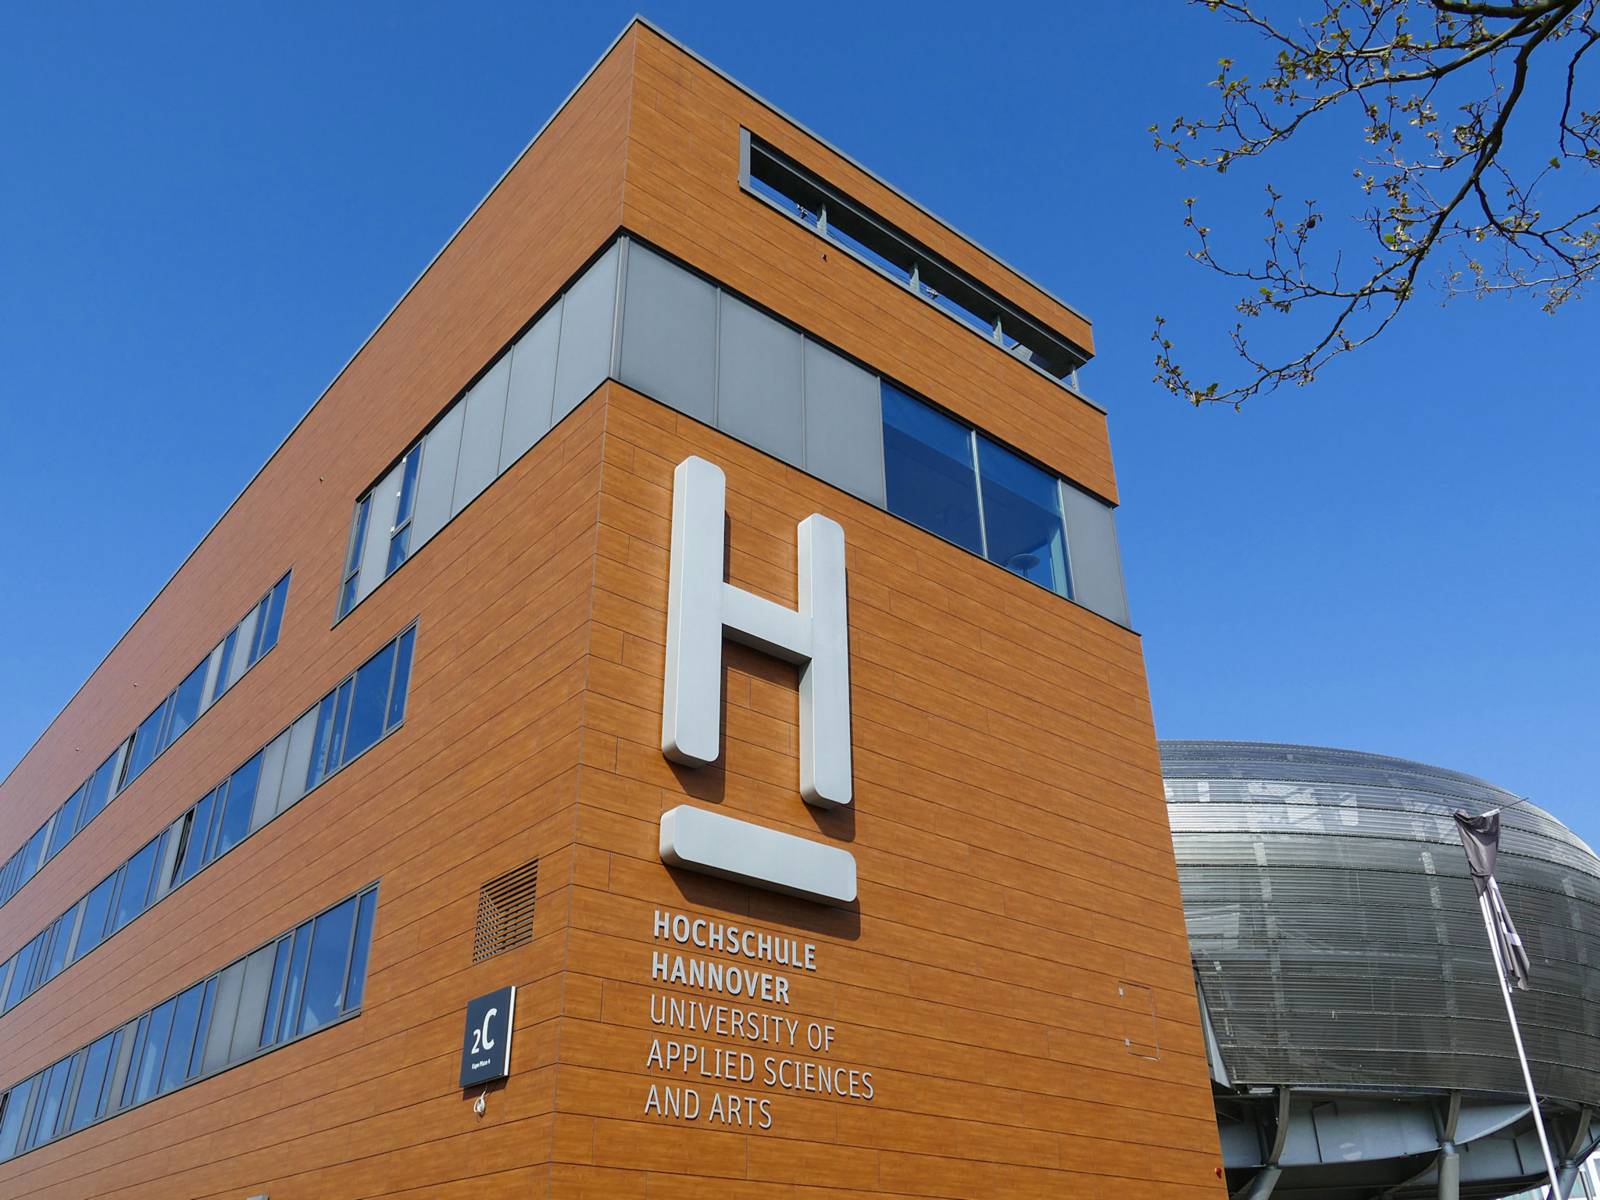 Gebäude mit der Aufschrift "Hochschule Hannover University of Applied Sciences and Arts"